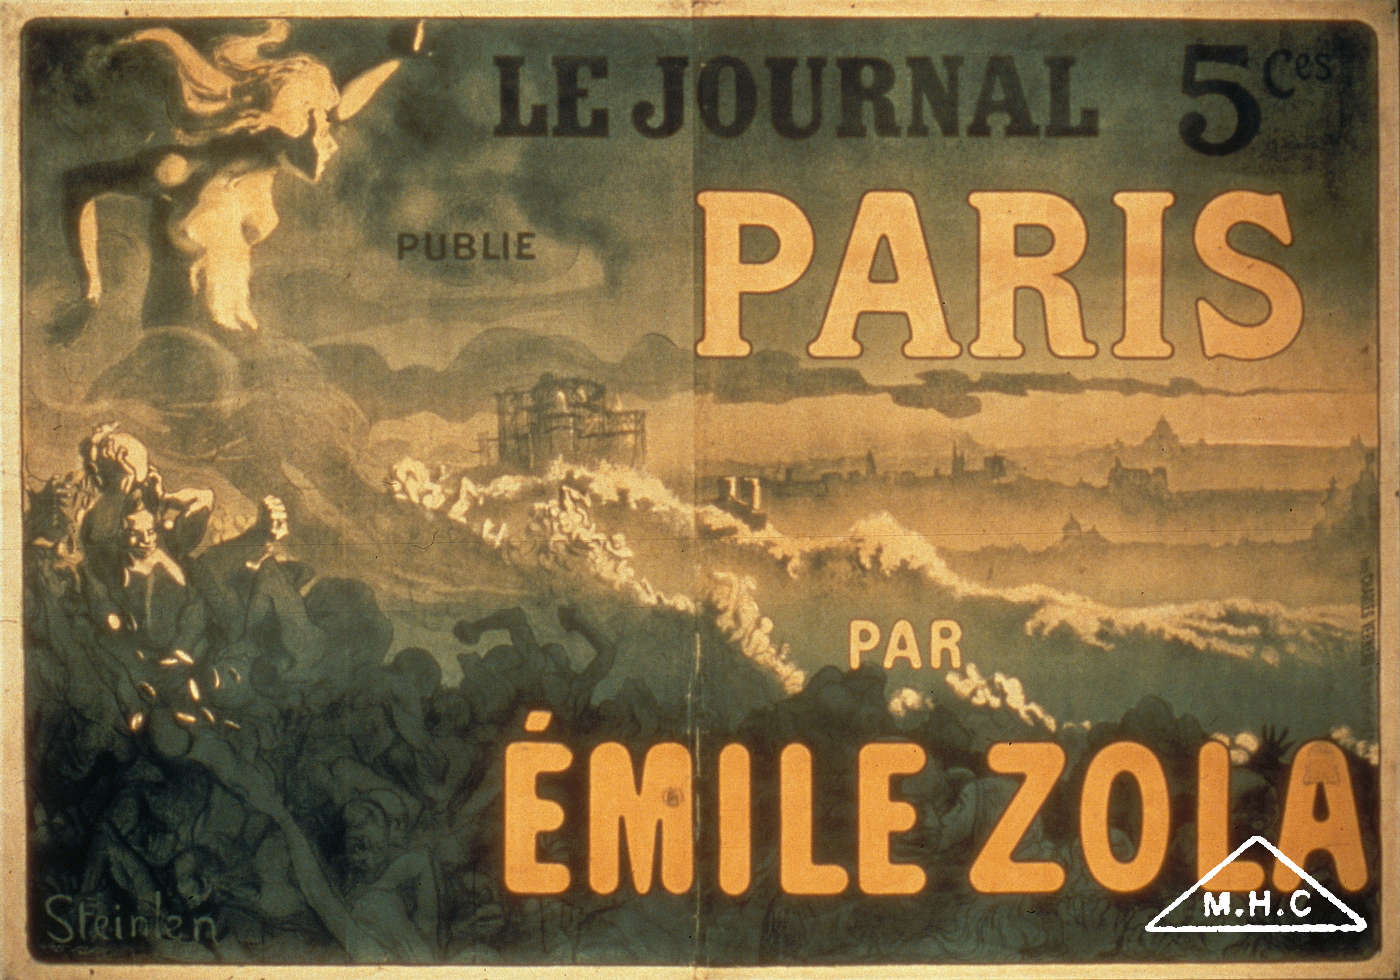 "Le Journal" publie "Paris" par Emile Zola